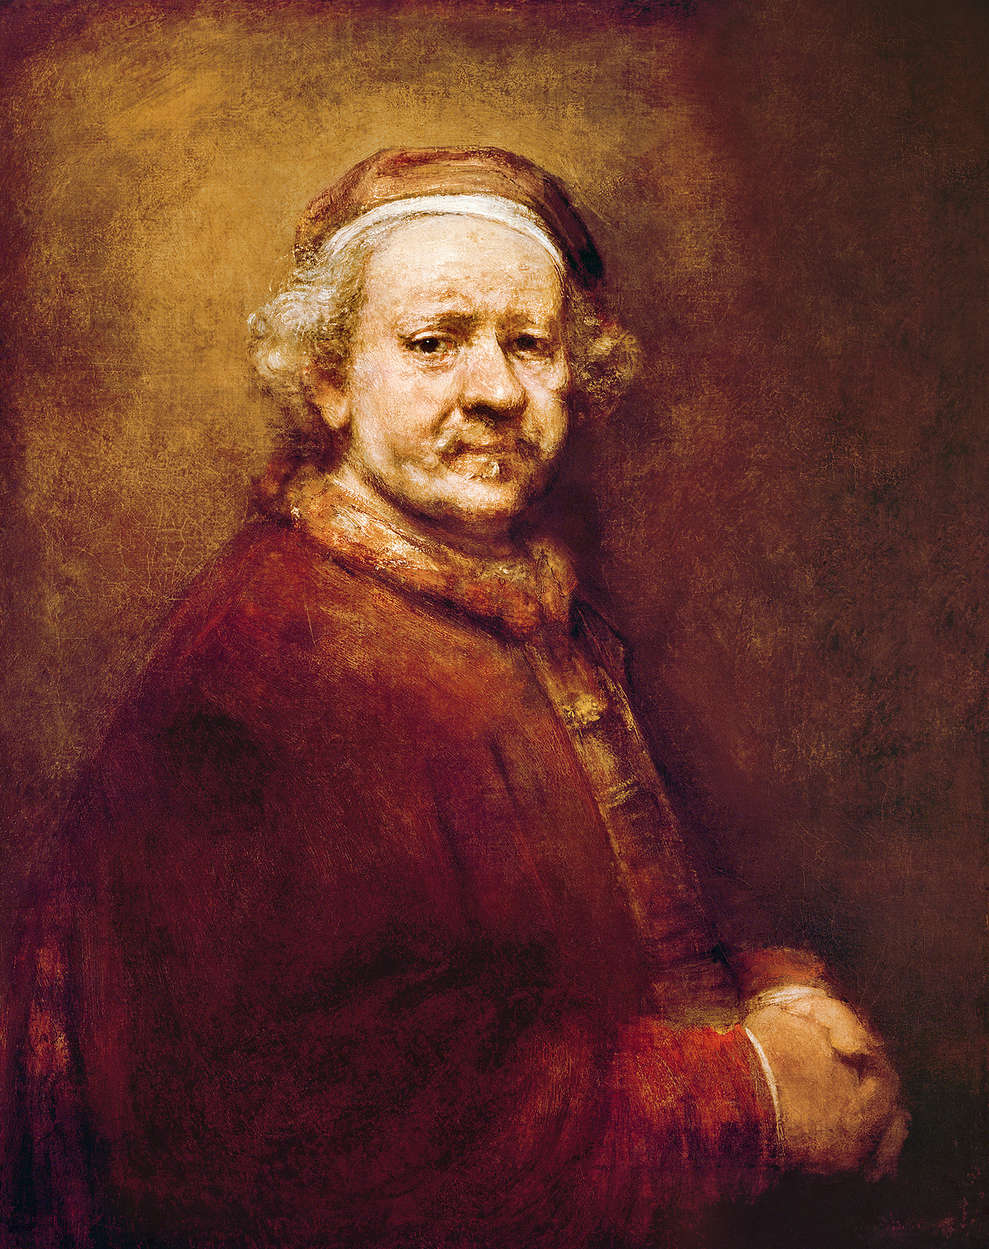             Zelfportret" muurschildering van Rembrandt van Rijn
        